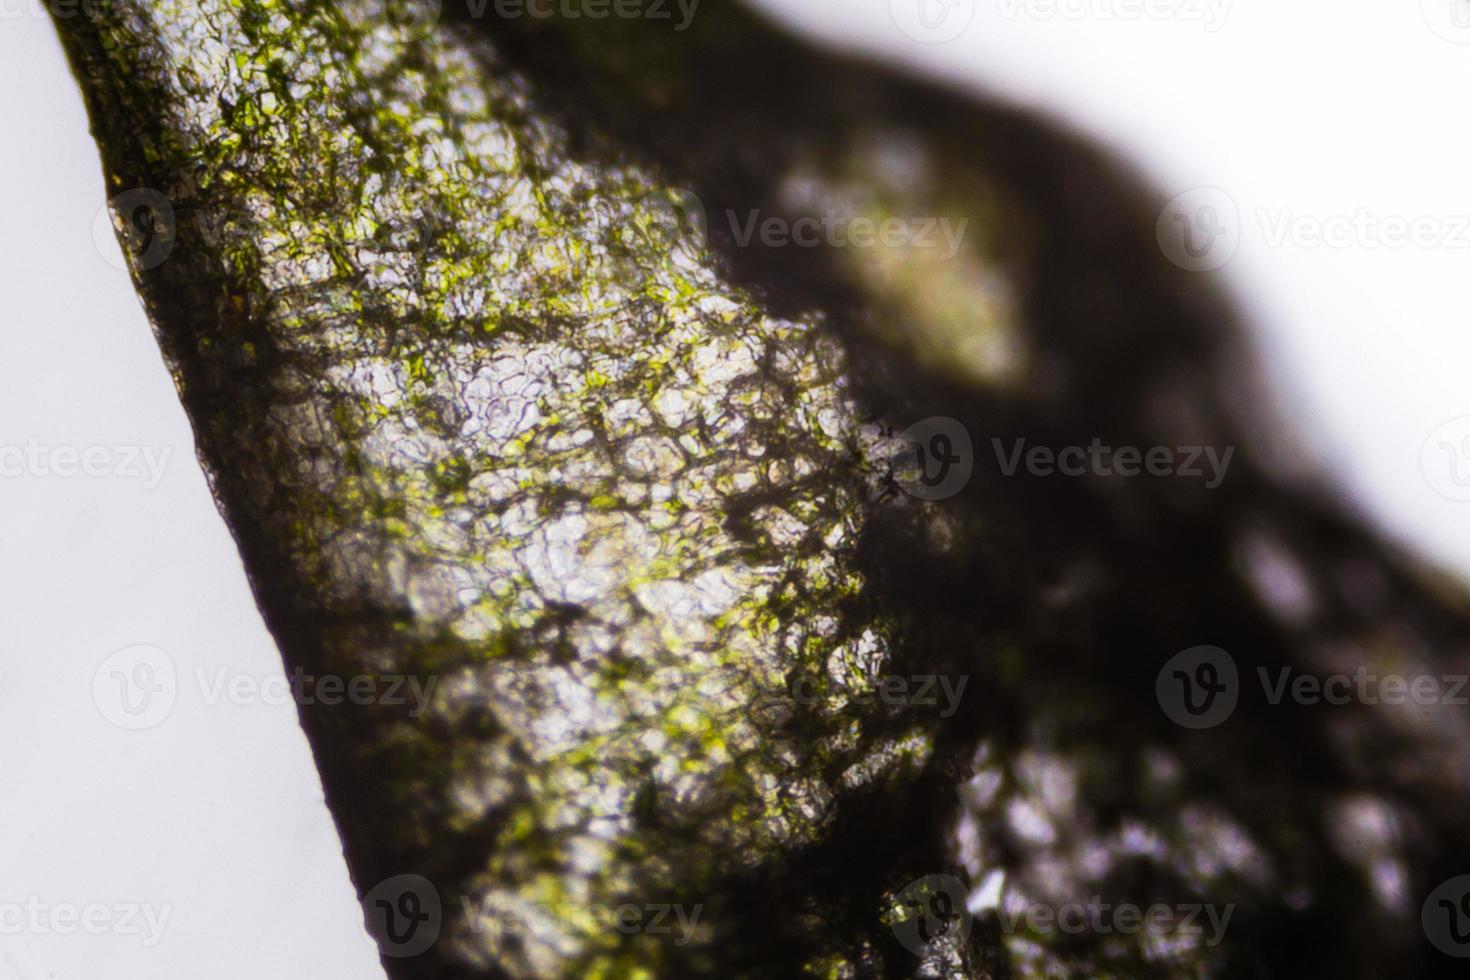 eingelegte Gurke unter dem Mikroskop foto